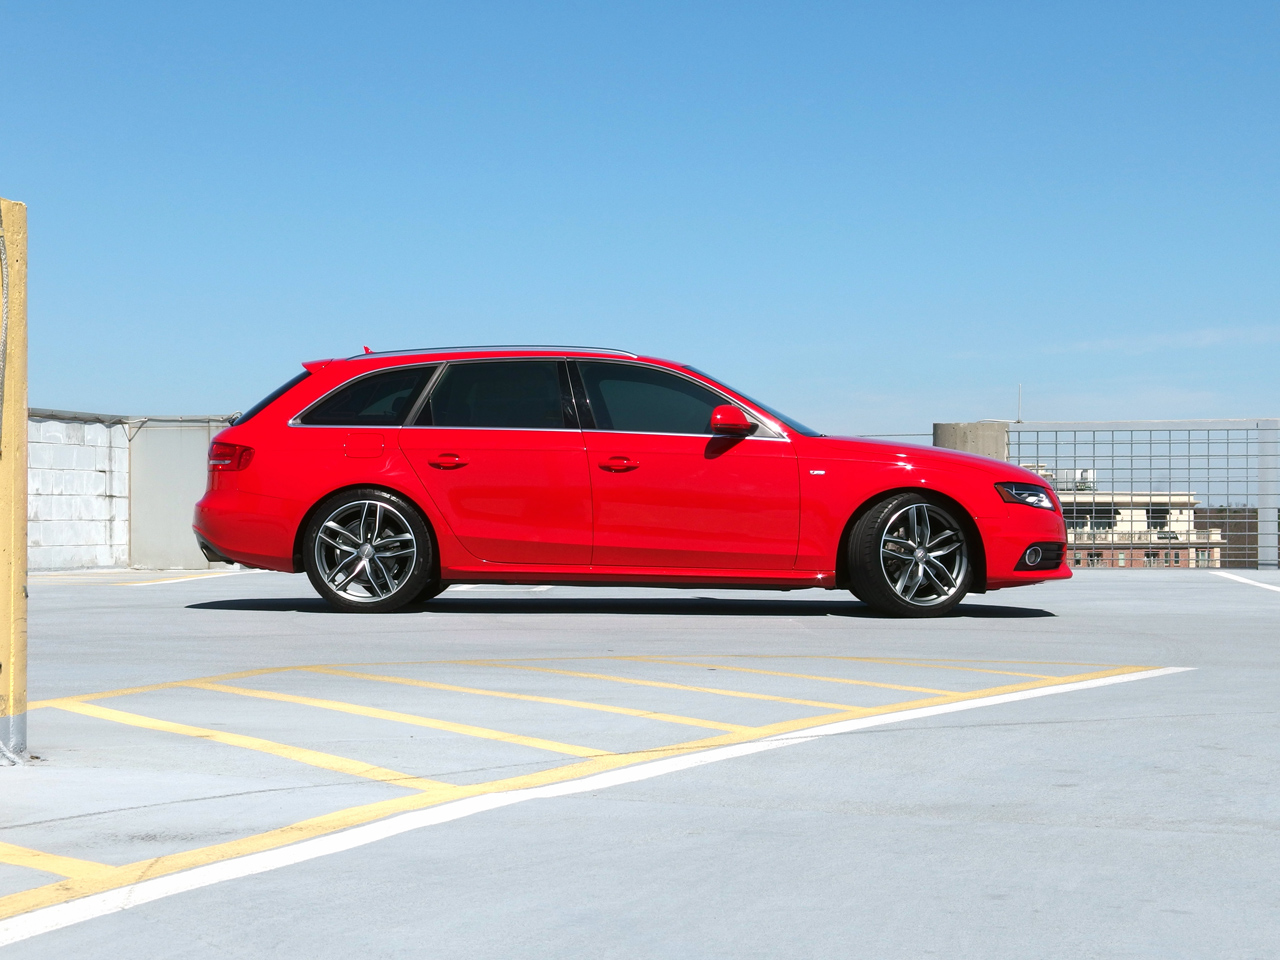 Audi A4 Avant vs Audi A6 Avant: Which One Reigns Supreme? - Just Audi Avants